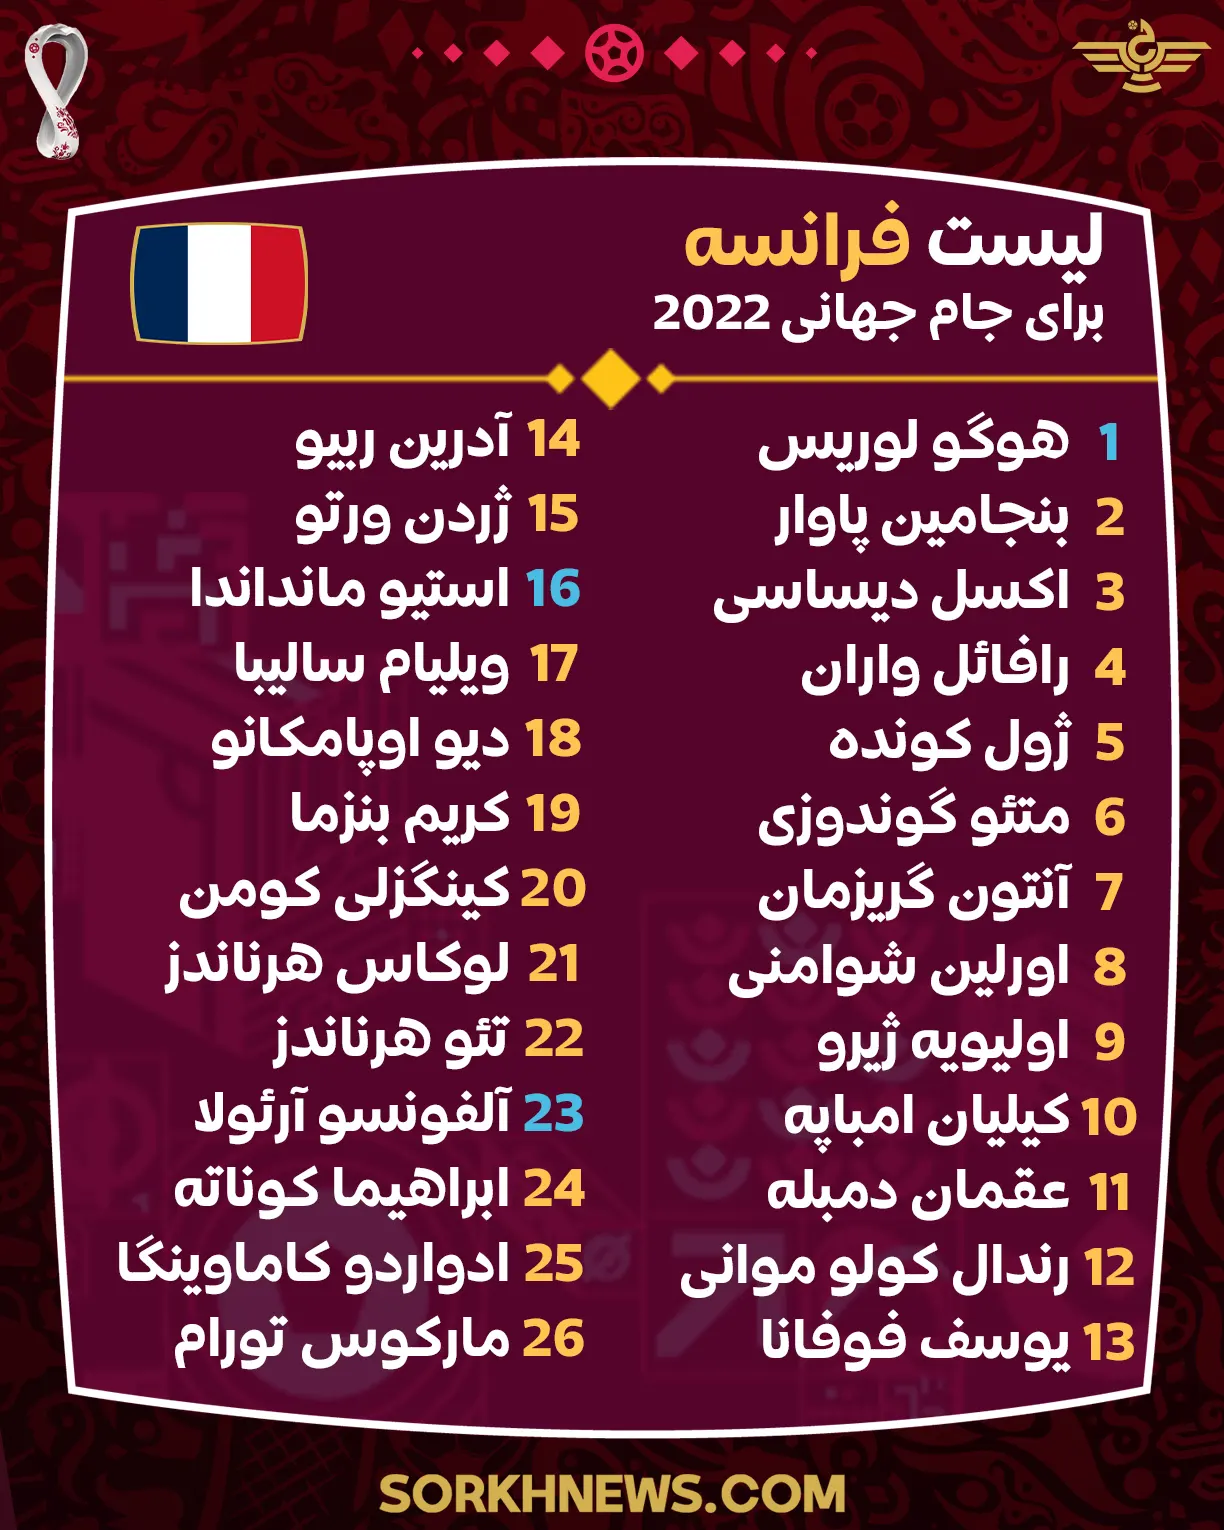 لیست نهایی تیم ملی فرانسه برای جام جهانی 2022